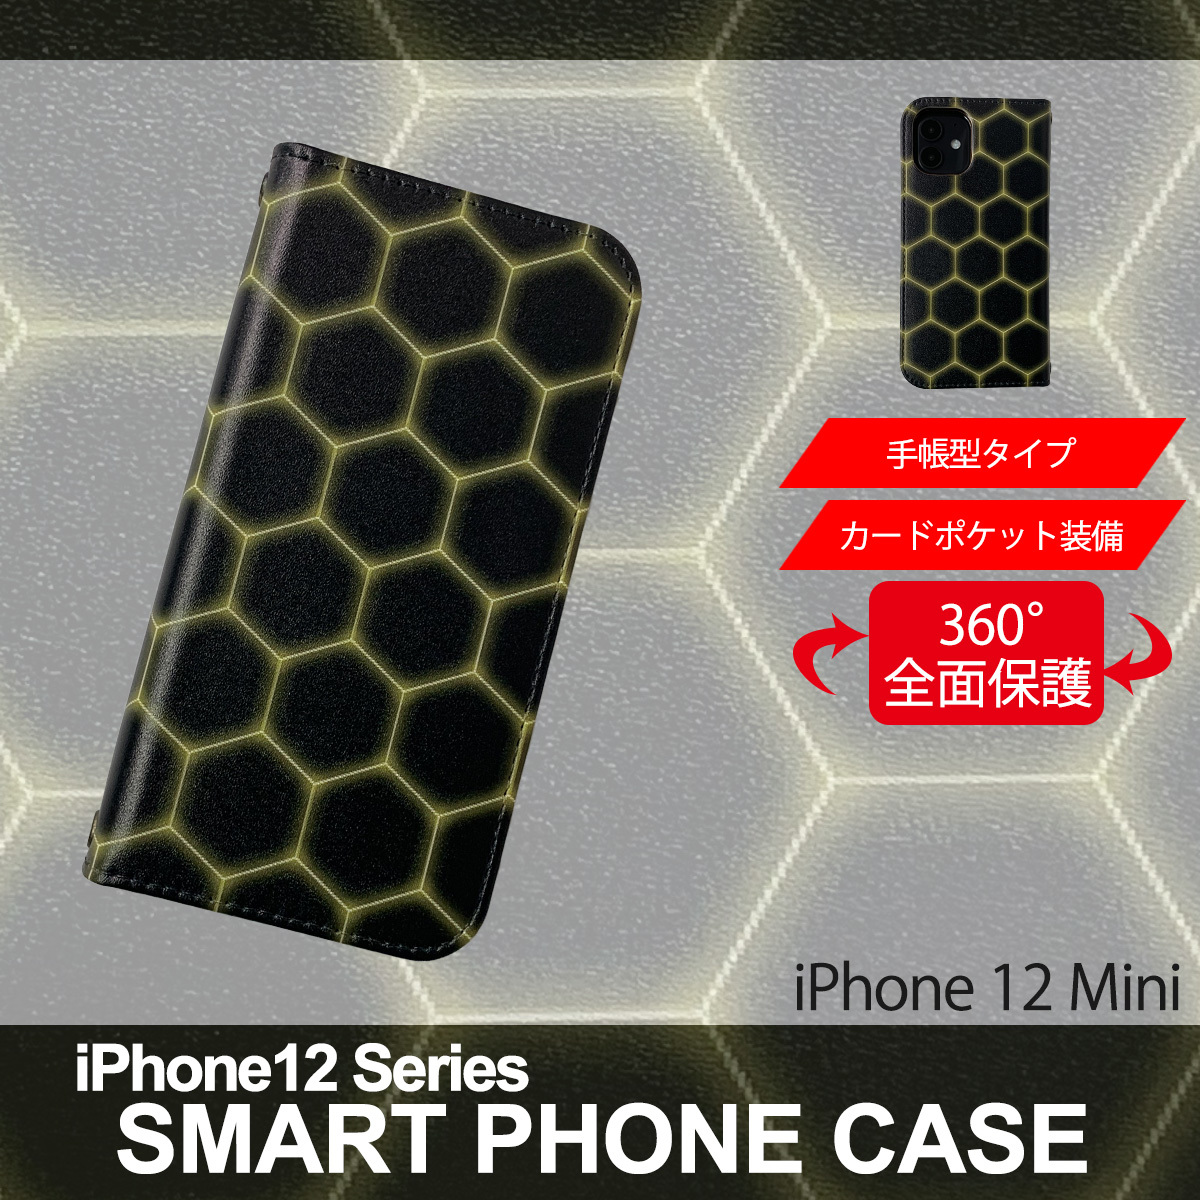 2 iPhone12 Mini 手帳型 スマートフォン ケース スマホカバー グリーン デザイン ヘキサゴン 激安挑戦中 マグネット内蔵 PVC 販売実績No.1 レザー 六角形A